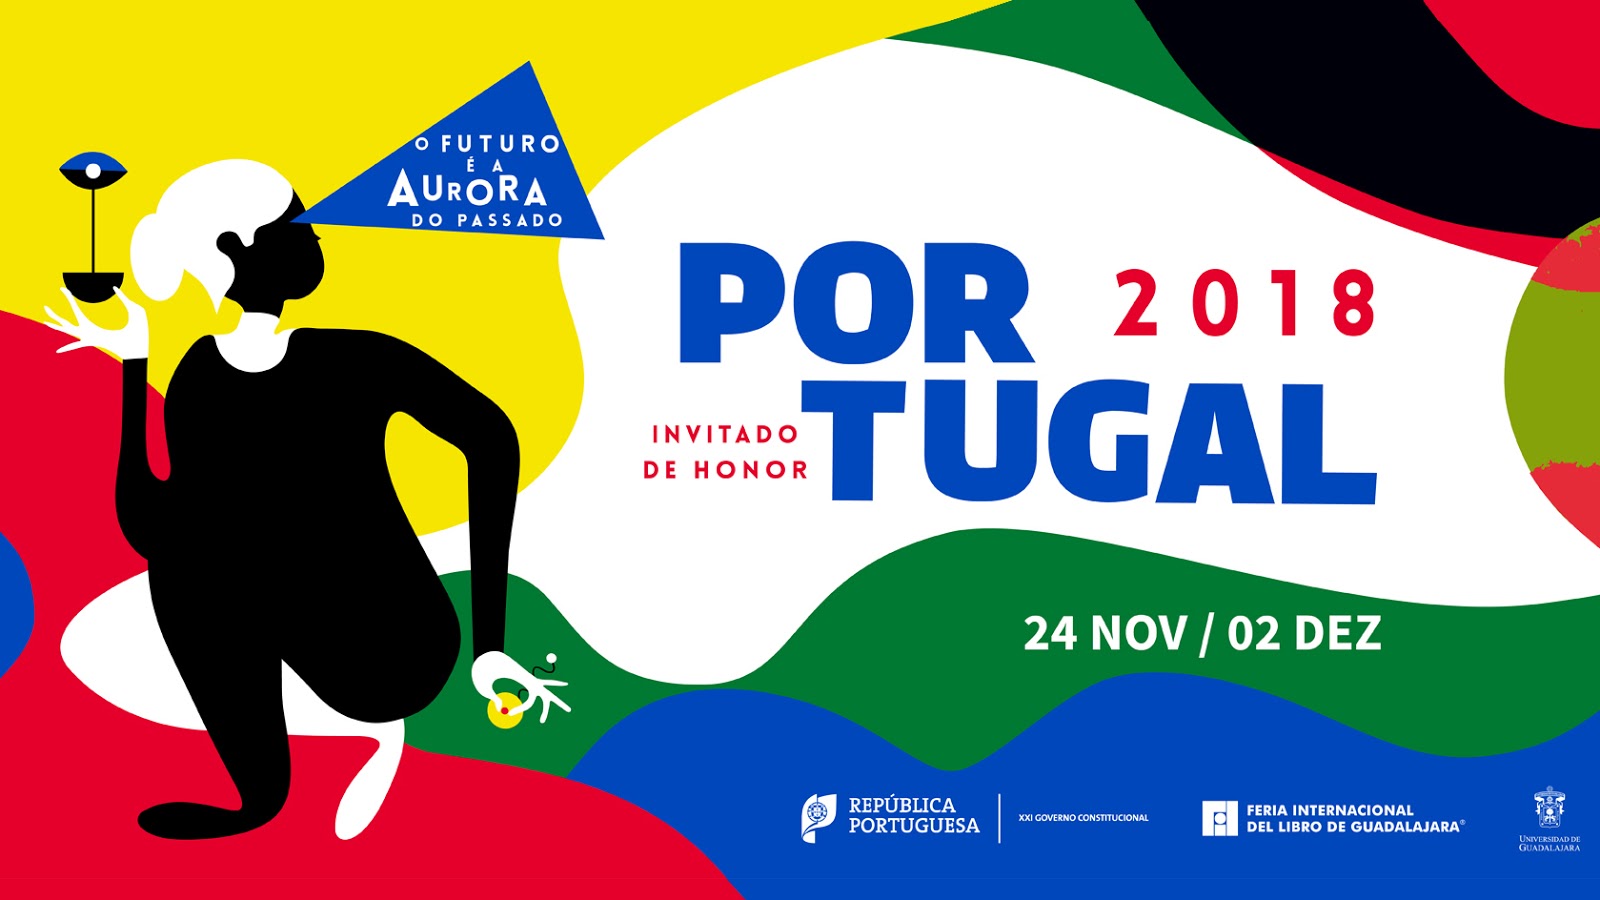 Imprensa Nacional marca presença na Feira Internacional do Livro de Guadalajara 2018, que arranca já amanhã